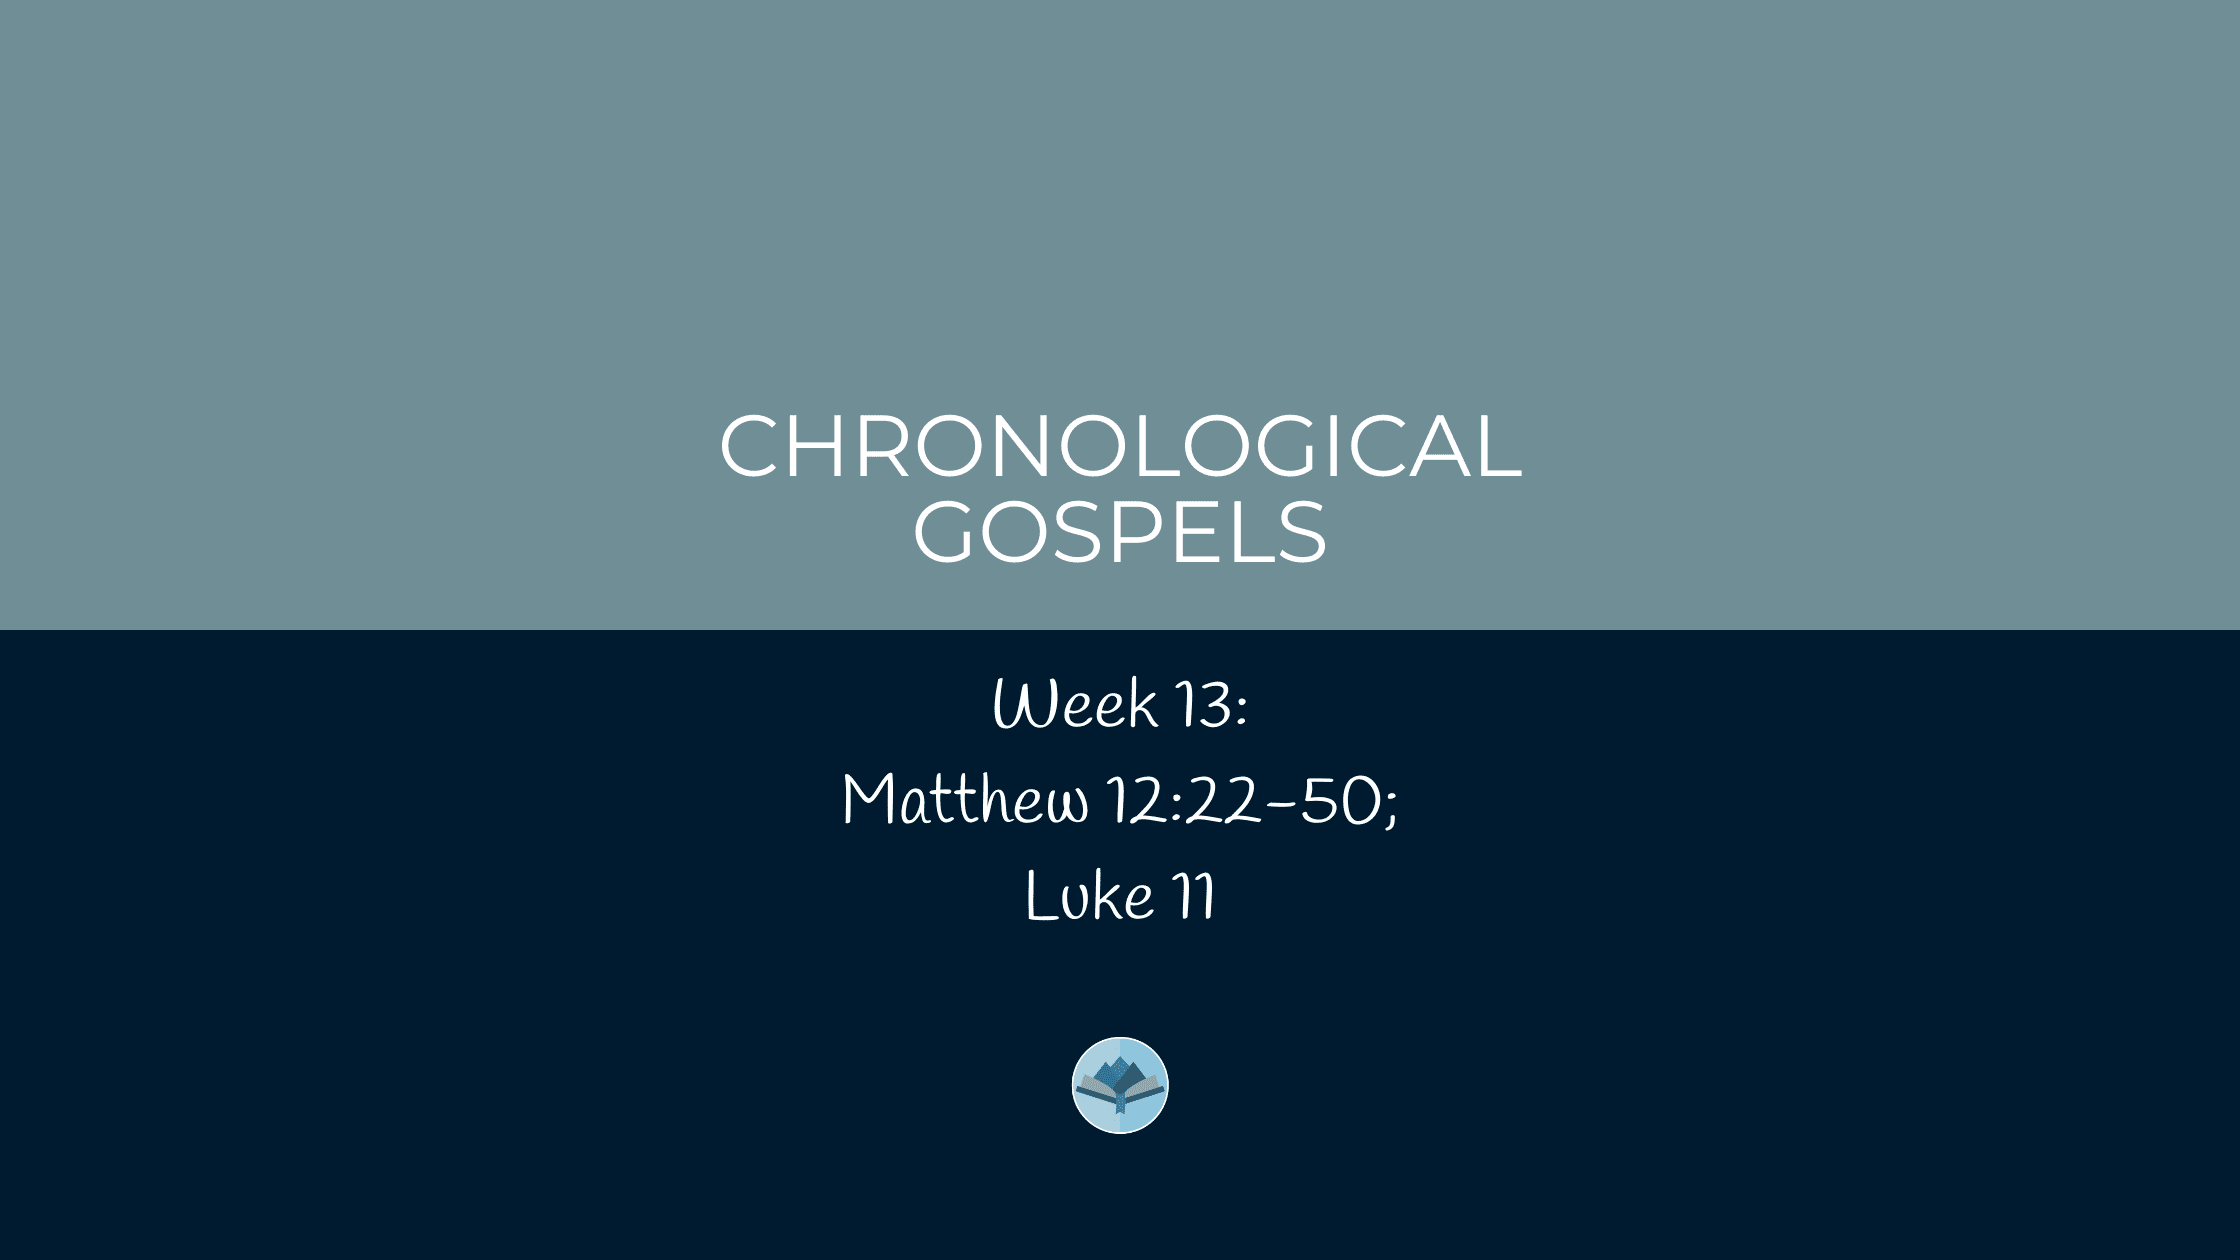 Chronological Gospels: Matthew 12:22-50; Luke 11